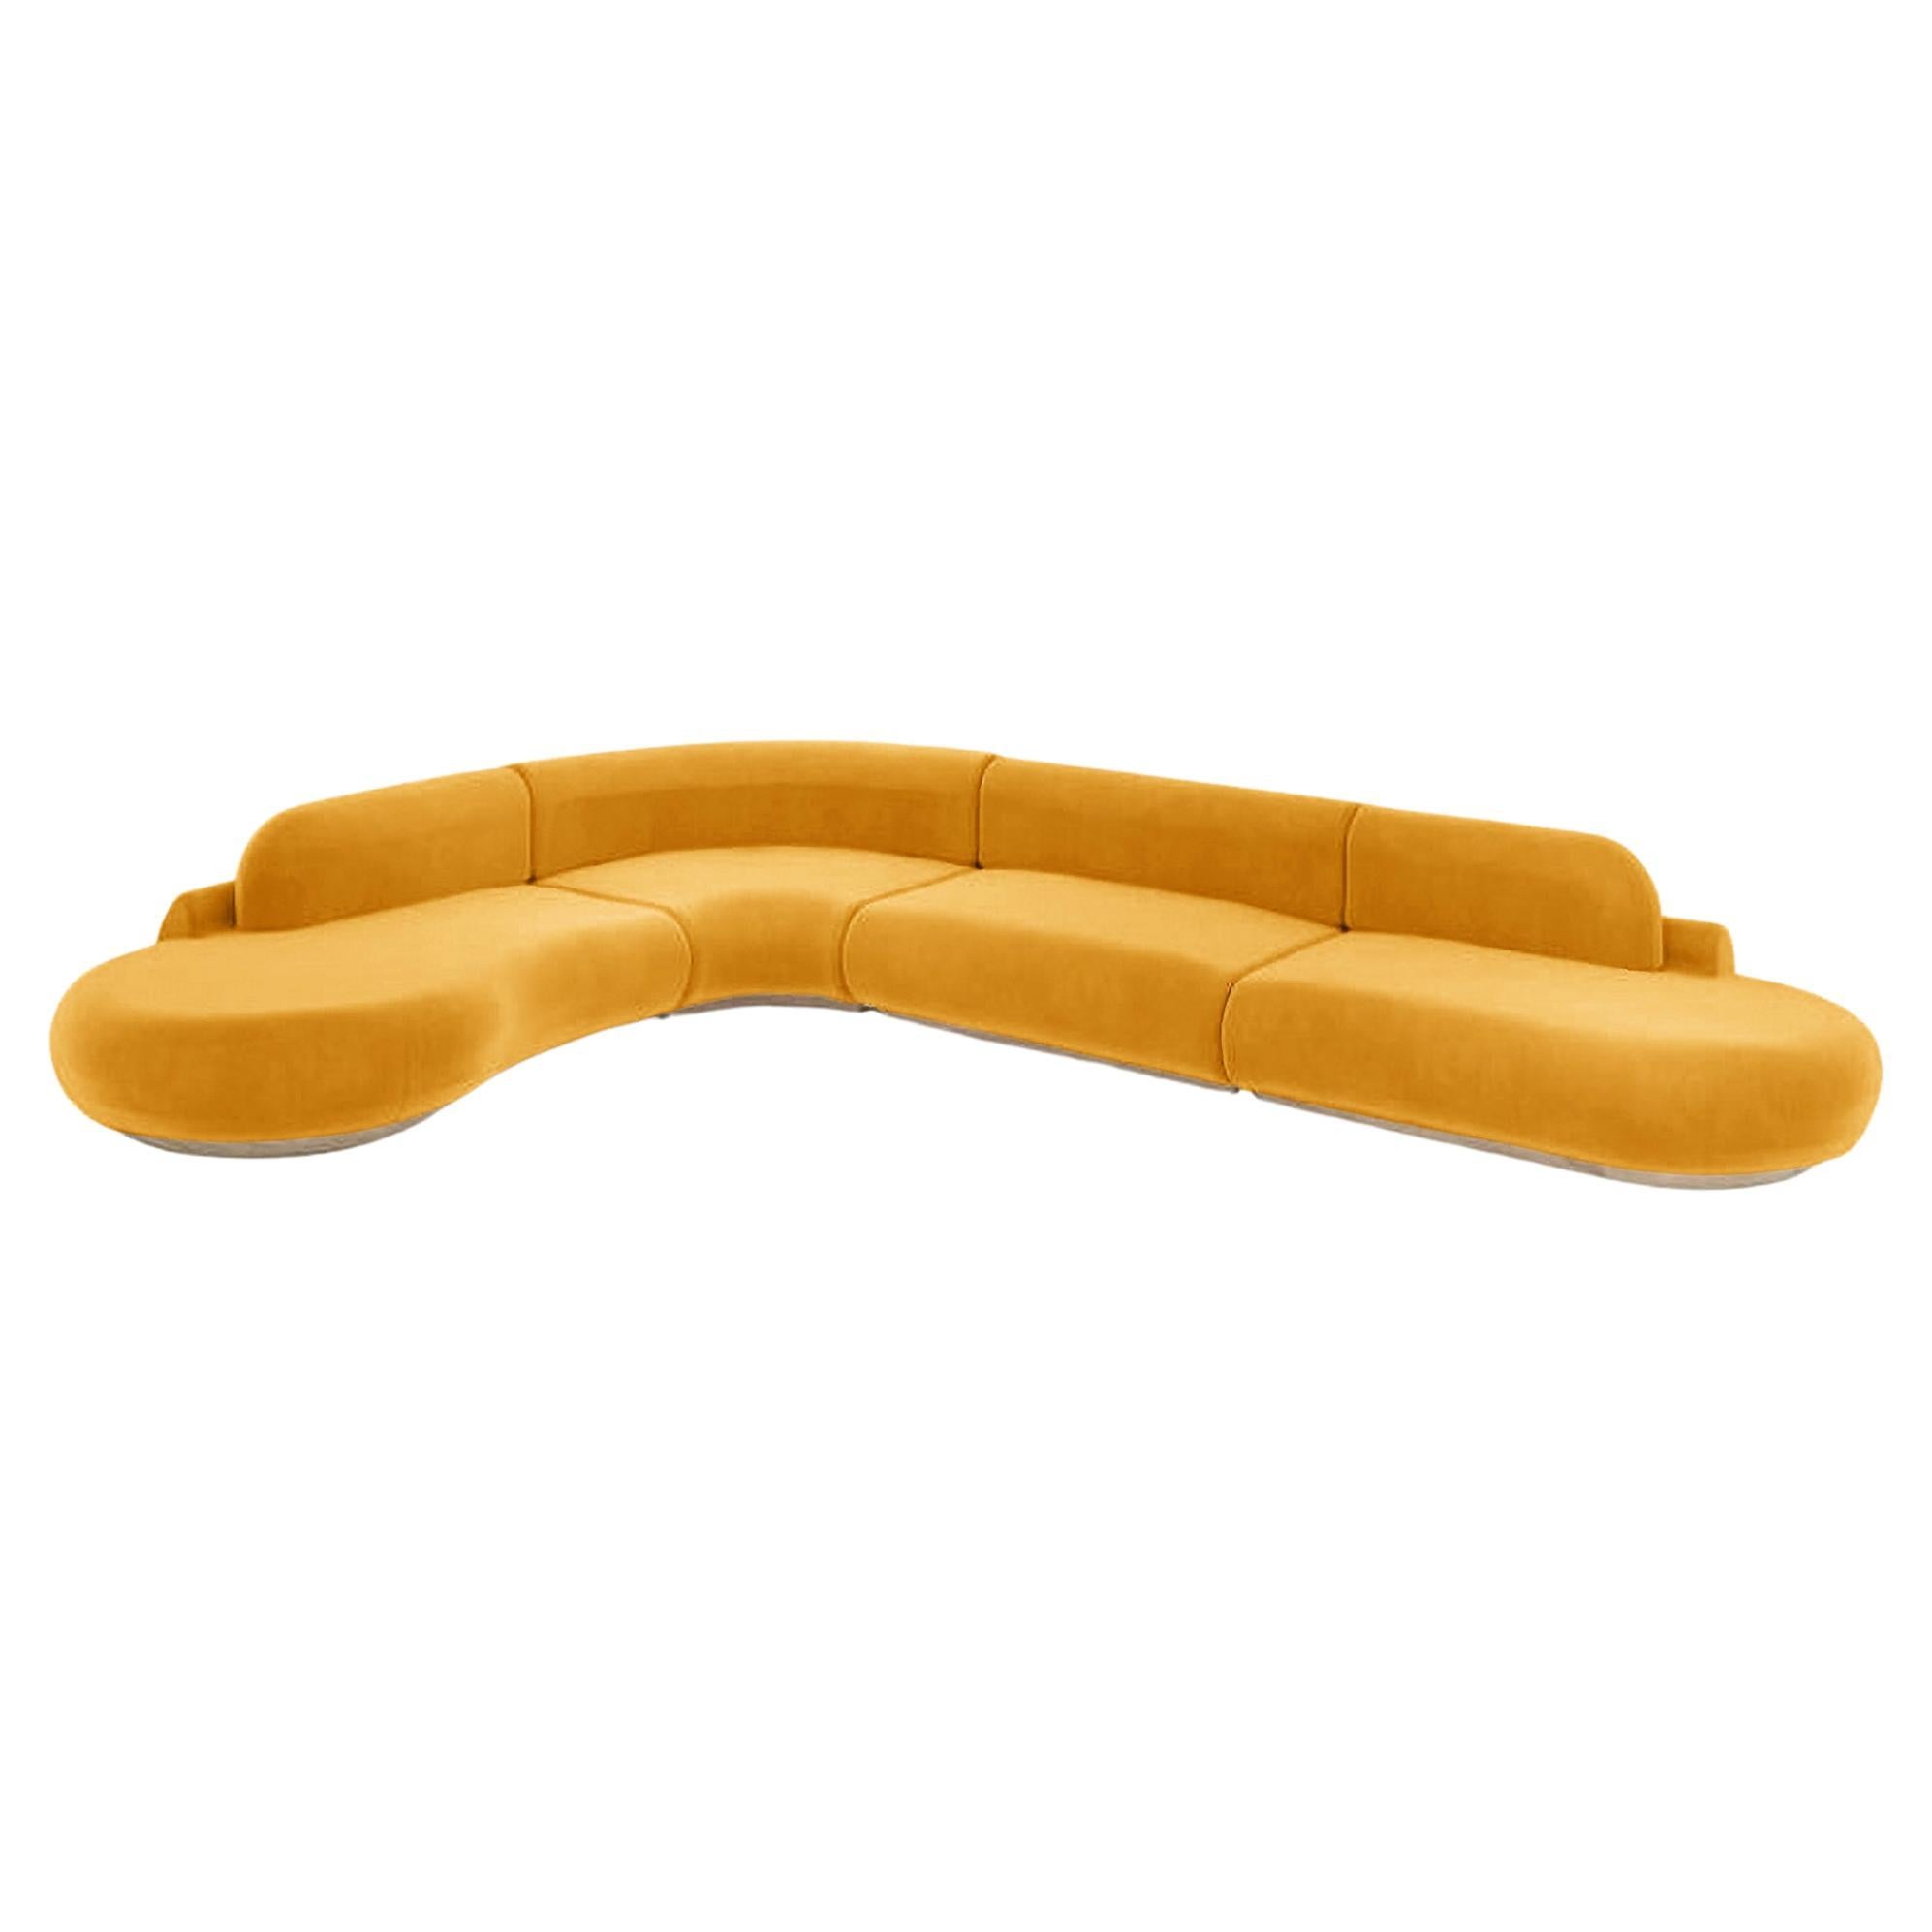 Canapé sectionnel à courbes nues, 4 pièces, en chêne naturel et corne